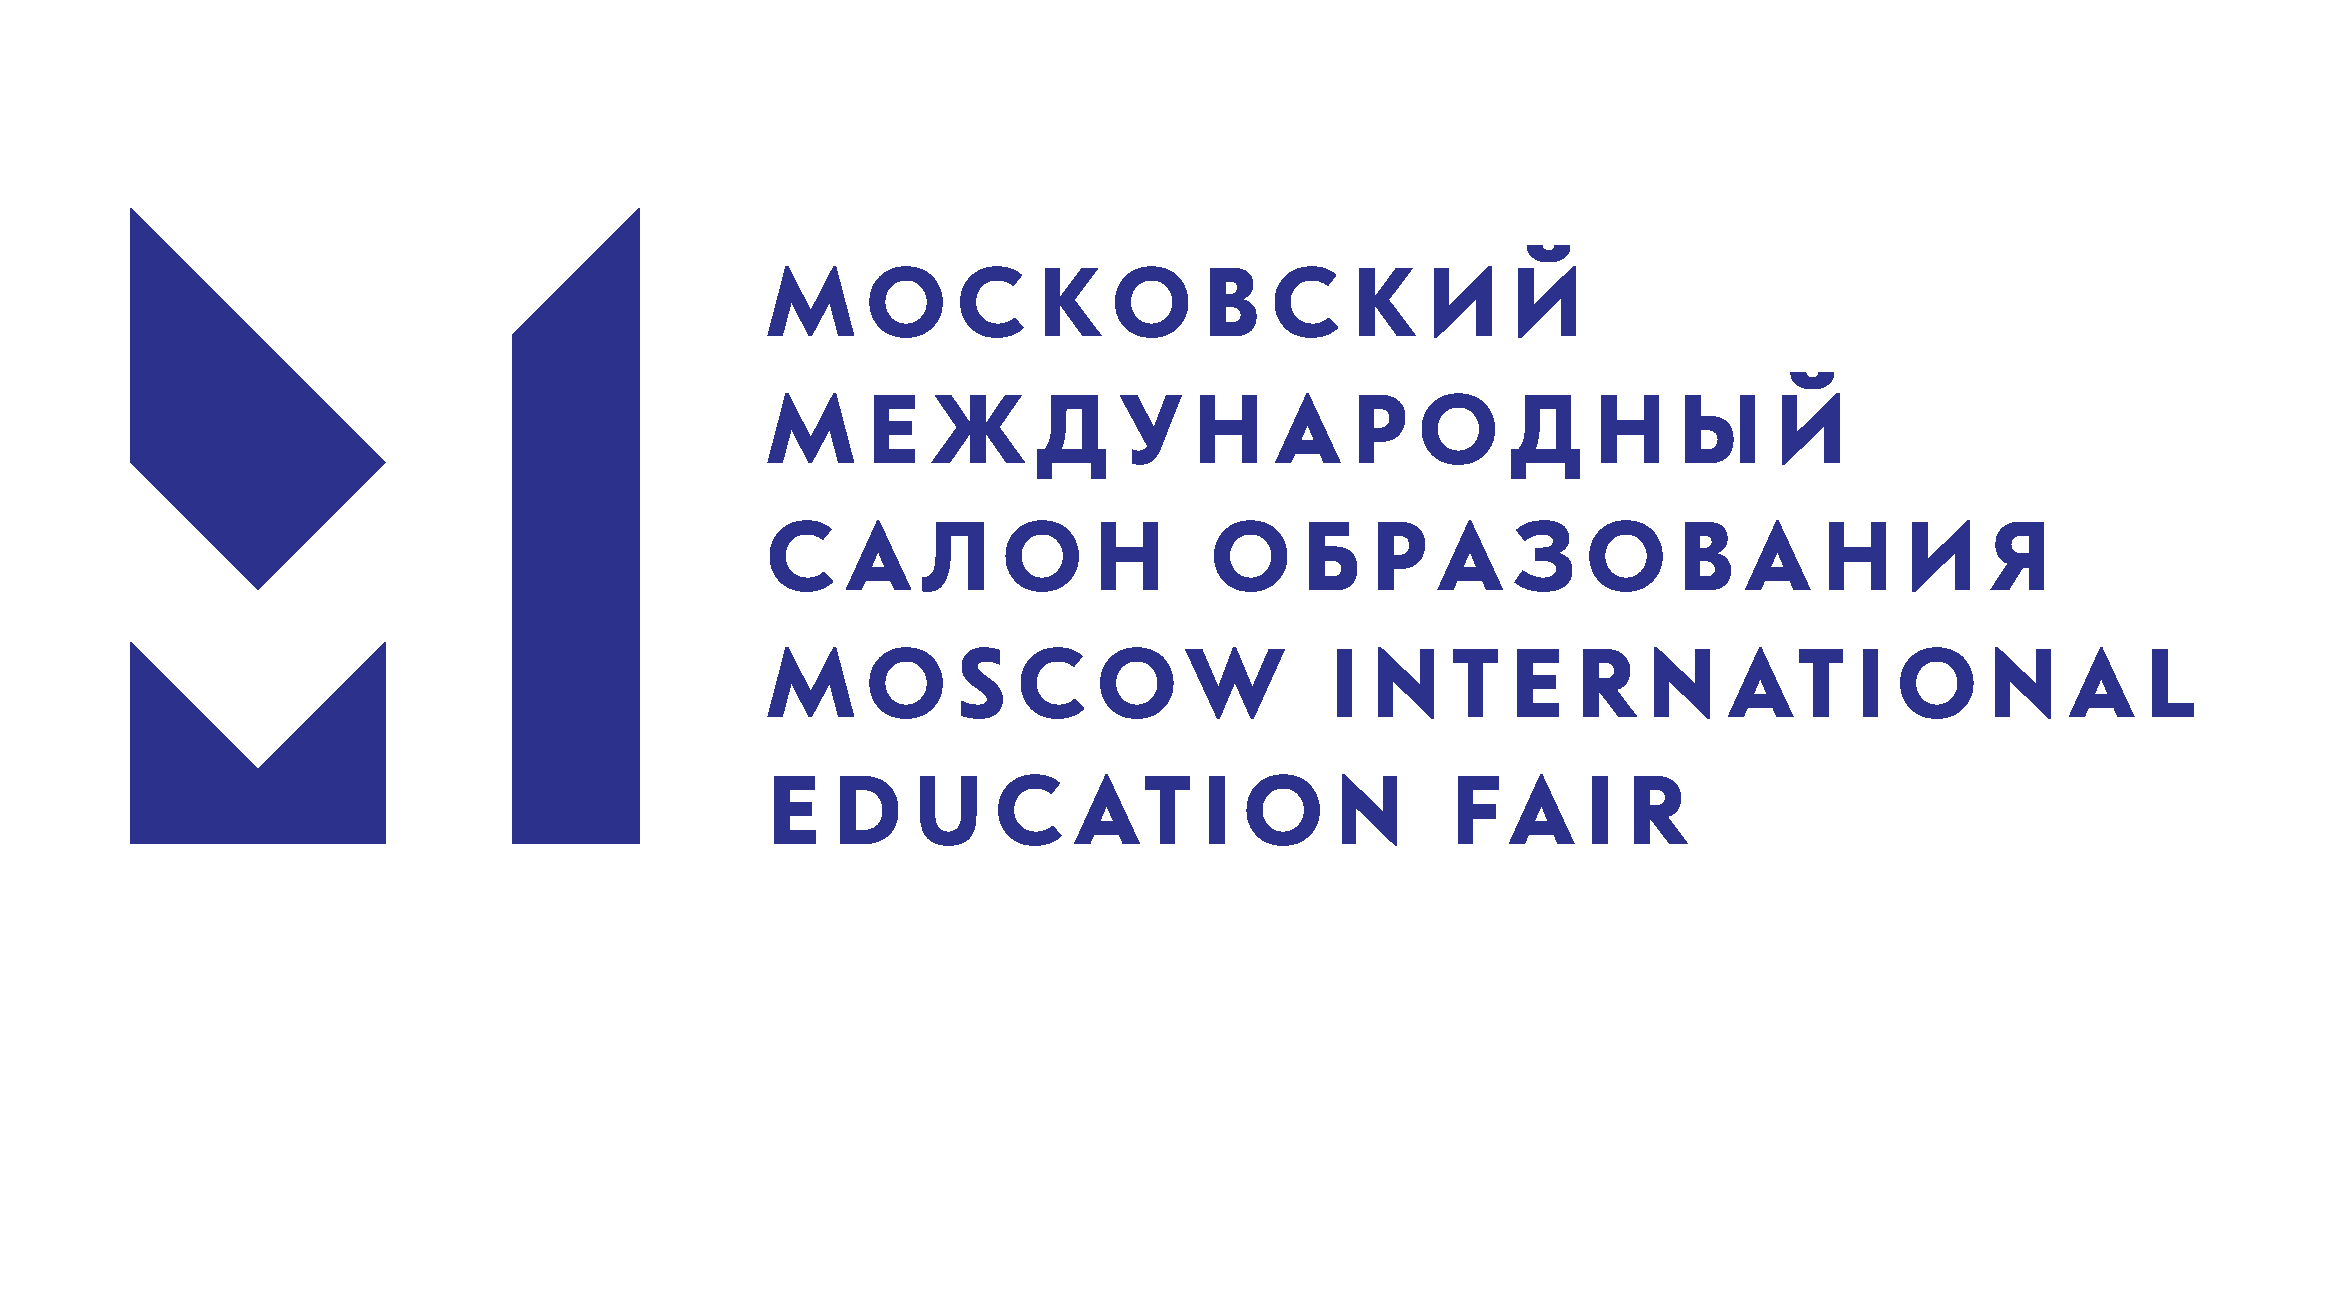 Московский международный салон образования - 2018 - 18/04/2018